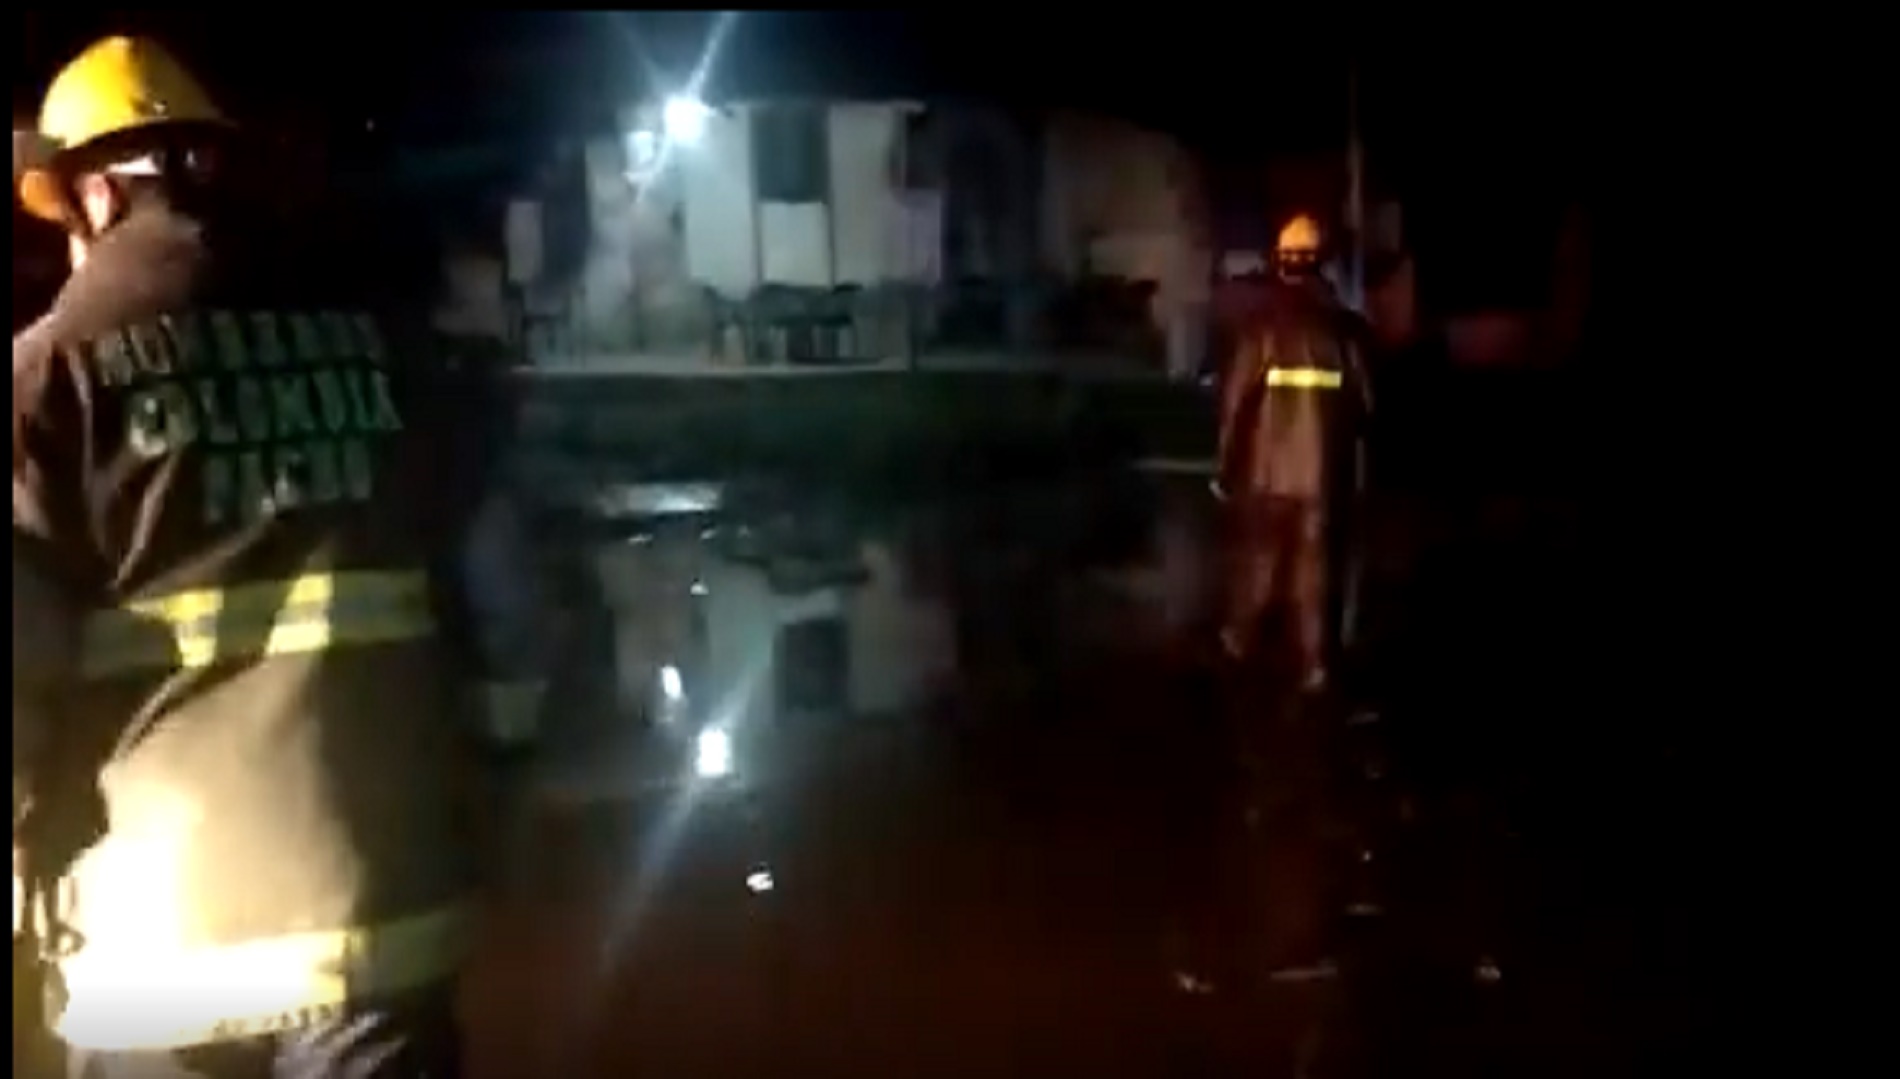 Captura de pantalla de Bomberos de Pacho (Cund.) en acción durante desbordamiento de río aledaño al municipio